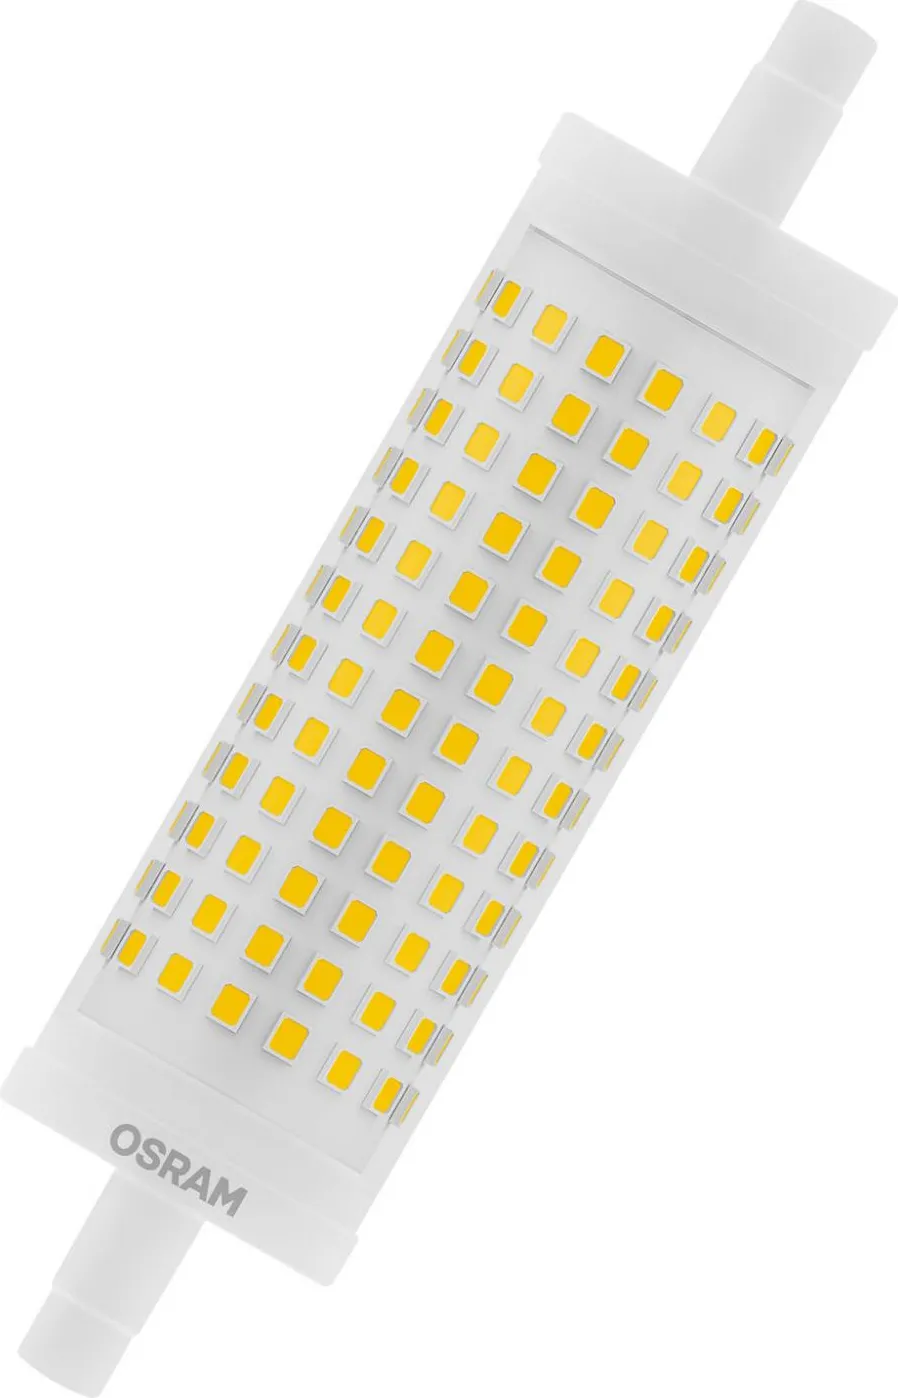 OSRAM LINE lampada LED 17,5 W R7s E - 4058075432697